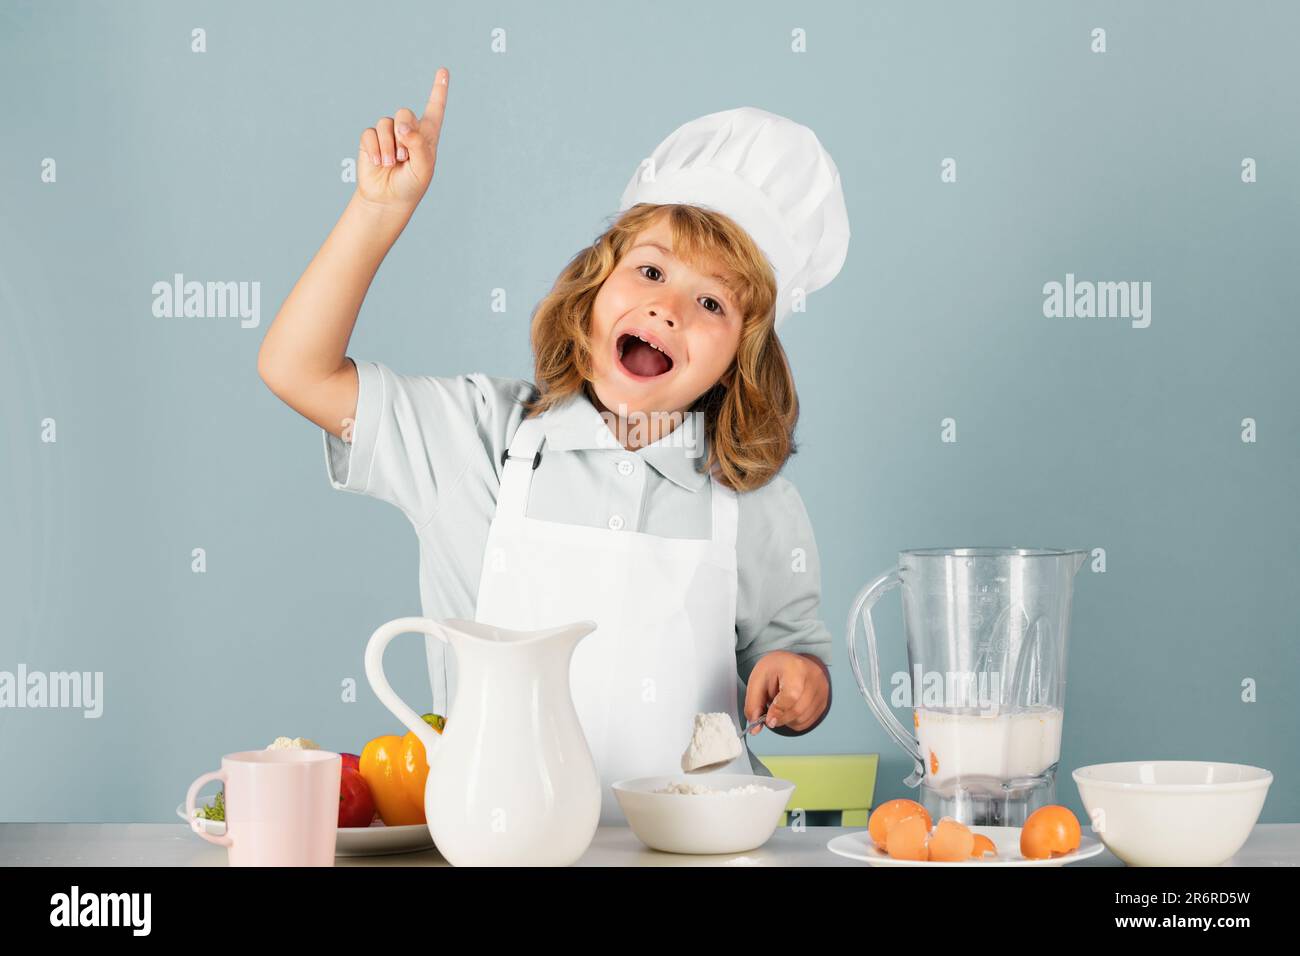 https://c8.alamy.com/compit/2r6rd5w/bambino-che-indossa-uniforme-cucina-e-cappello-chef-preparare-il-cibo-con-farina-in-cucina-ritratto-studio-cucina-cucina-e-cibo-per-bambini-2r6rd5w.jpg